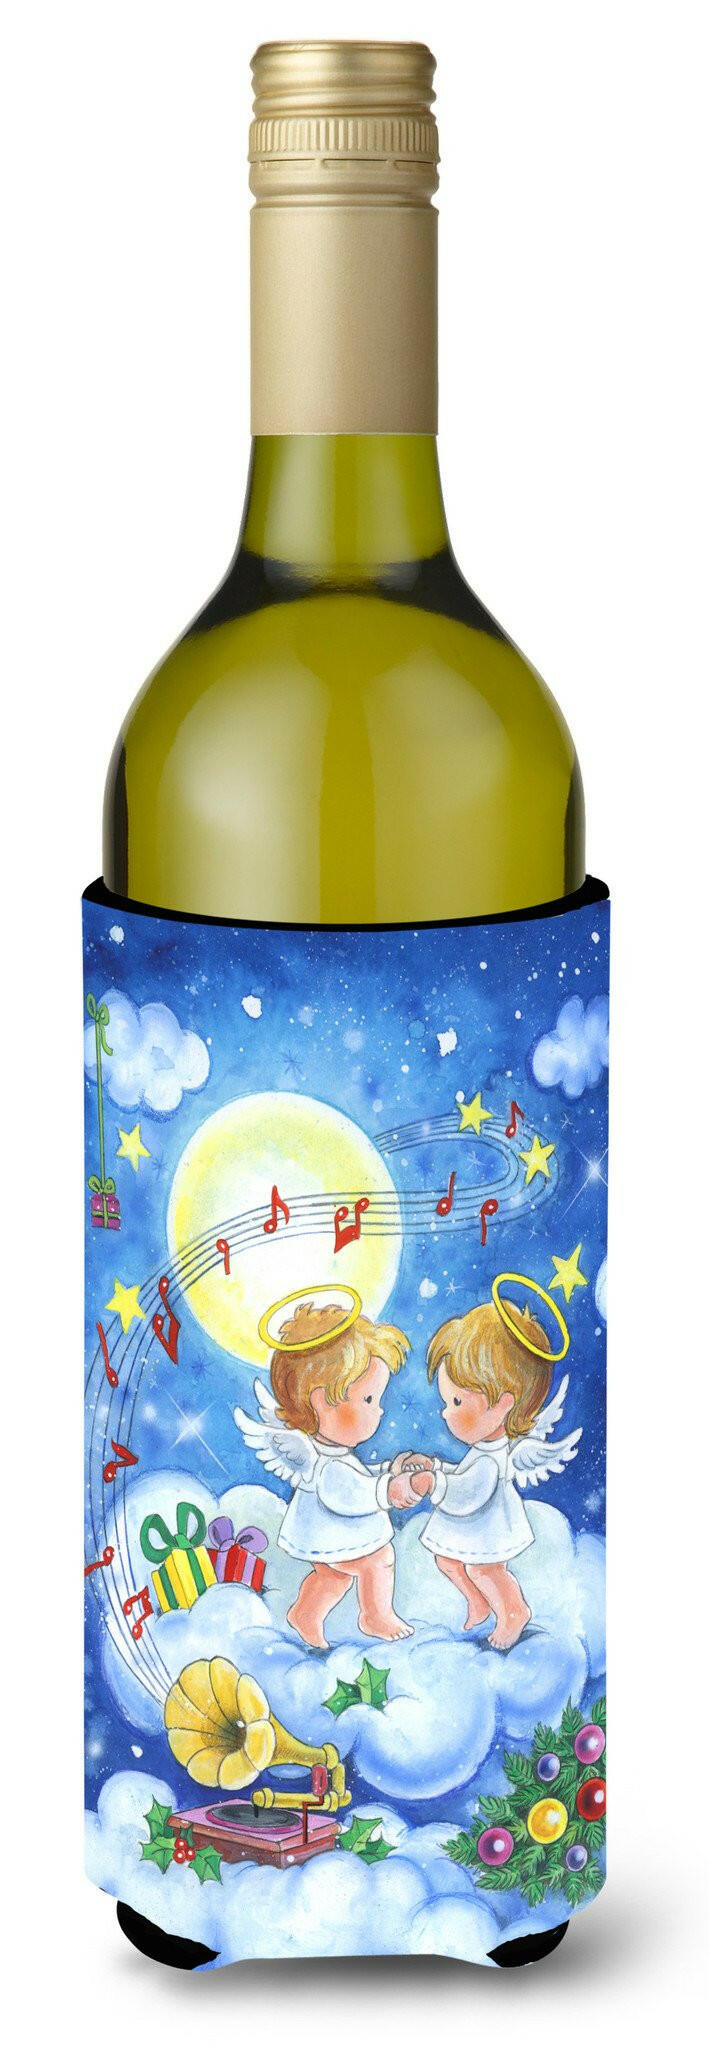 Angels Making Music Together Wine Bottle Beverage Insulator Hugger APH3790LITERK by Caroline&#39;s Treasures